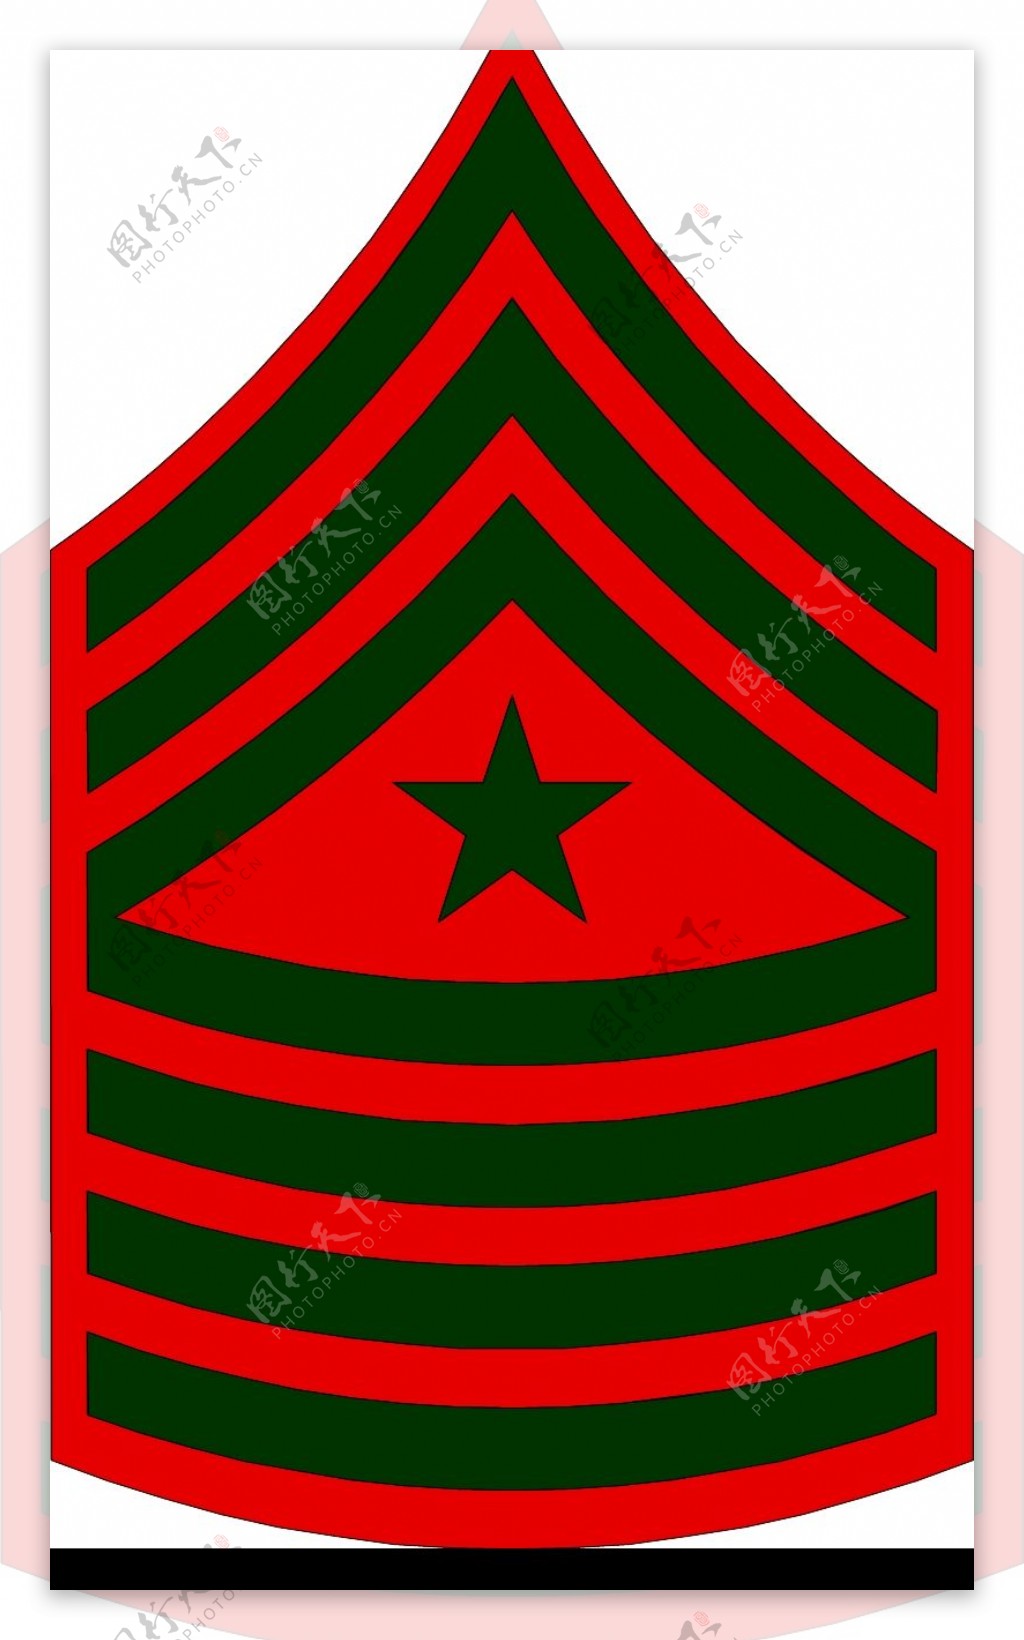 军队徽章0244